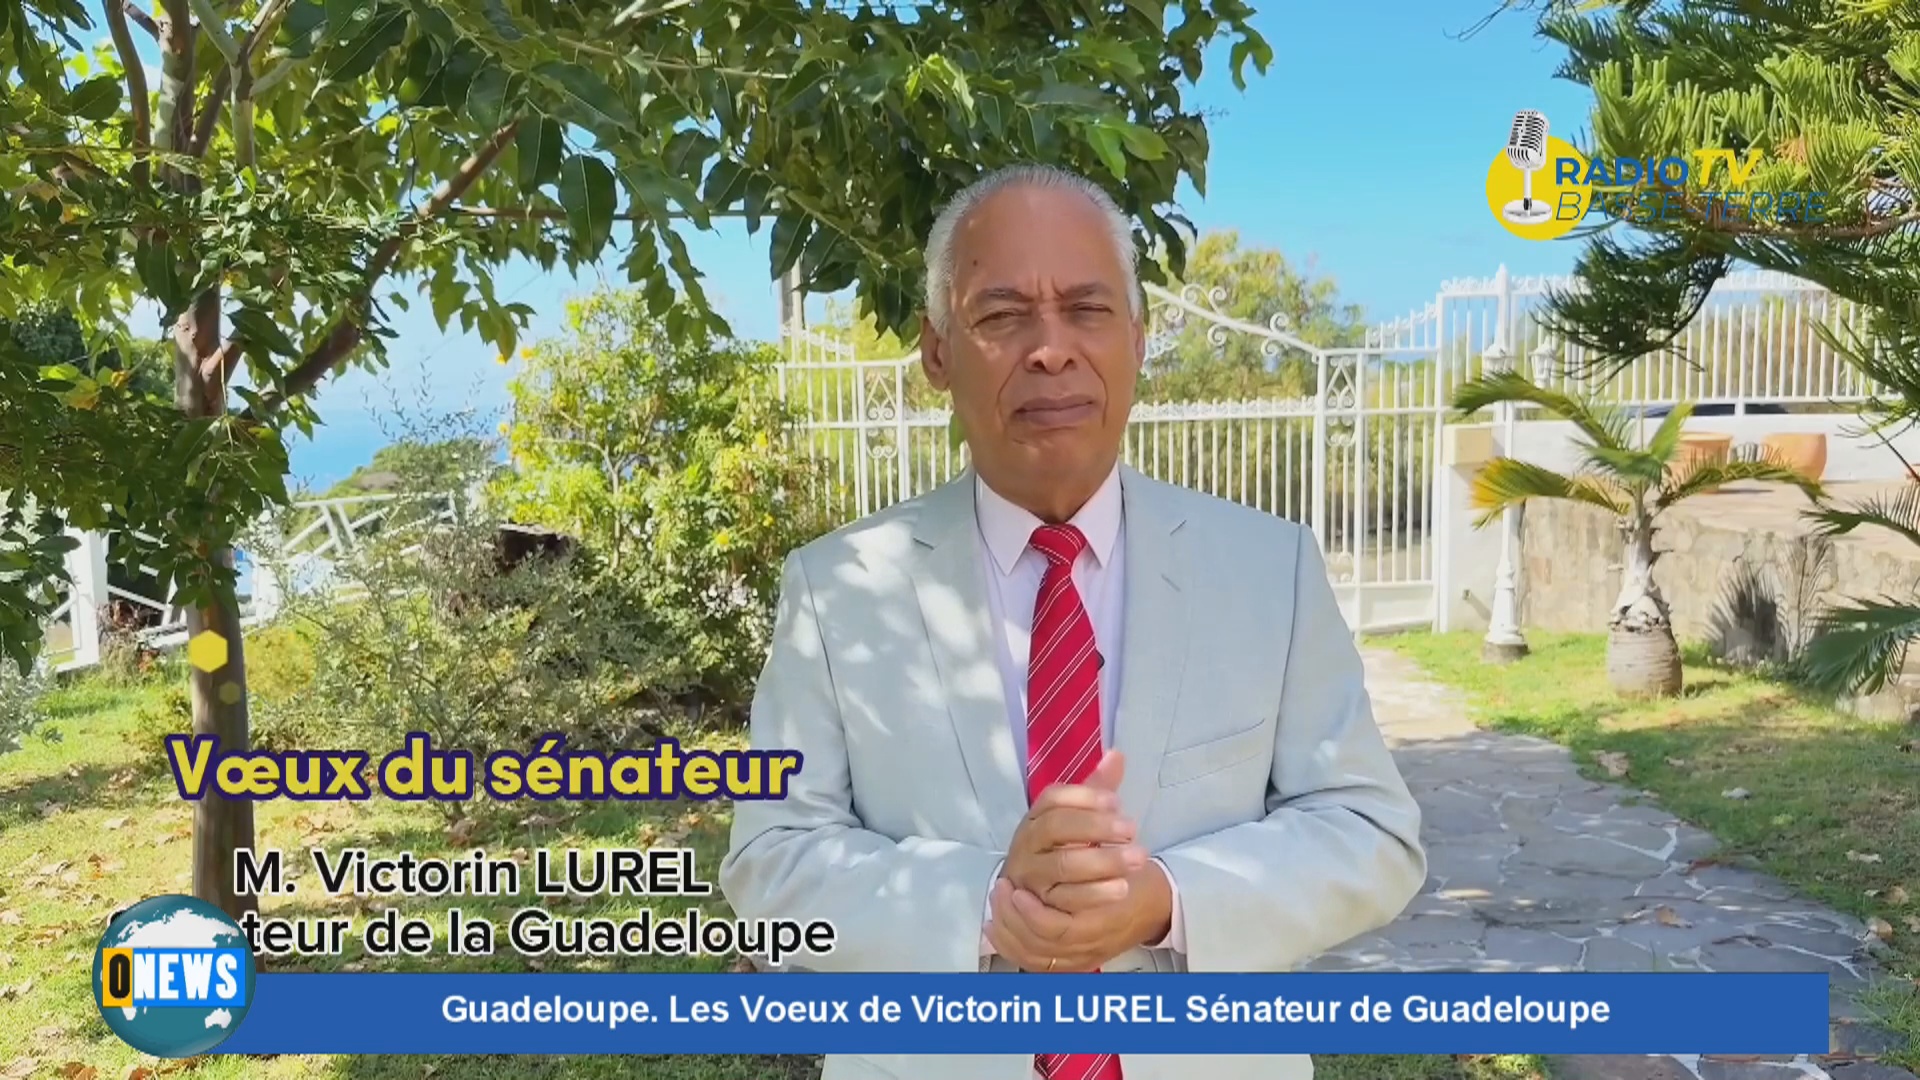 Guadeloupe. Les Voeux de Victorin LUREL Sénateur de Guadeloupe